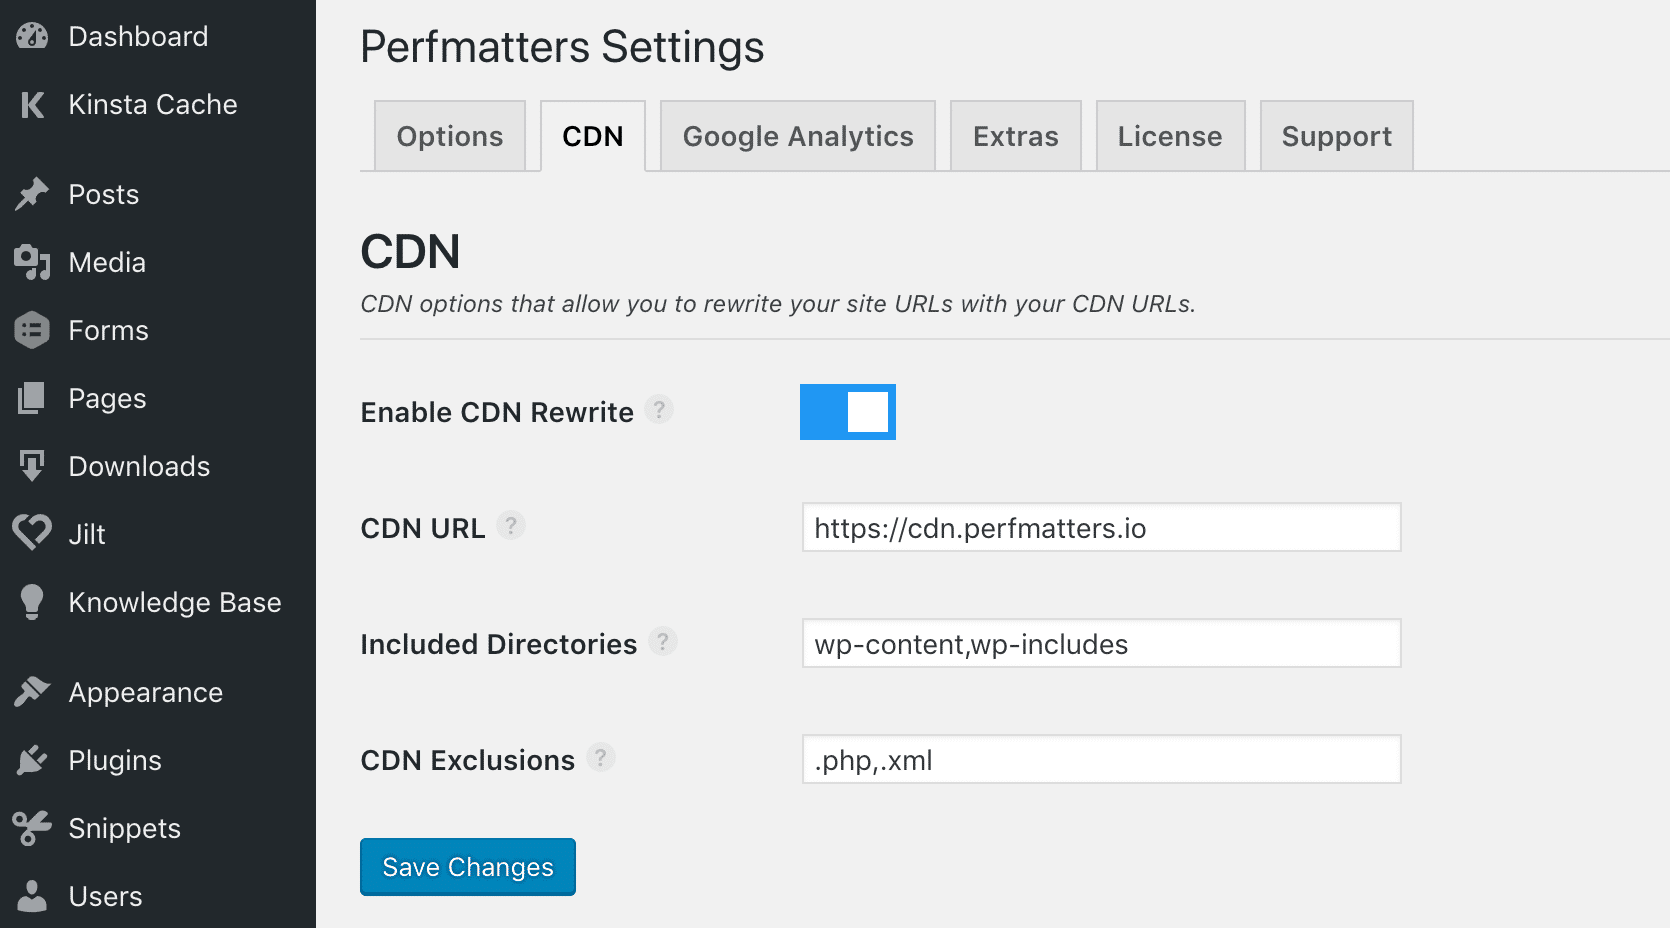 Habilite el CDN en WordPress con Perfmatters